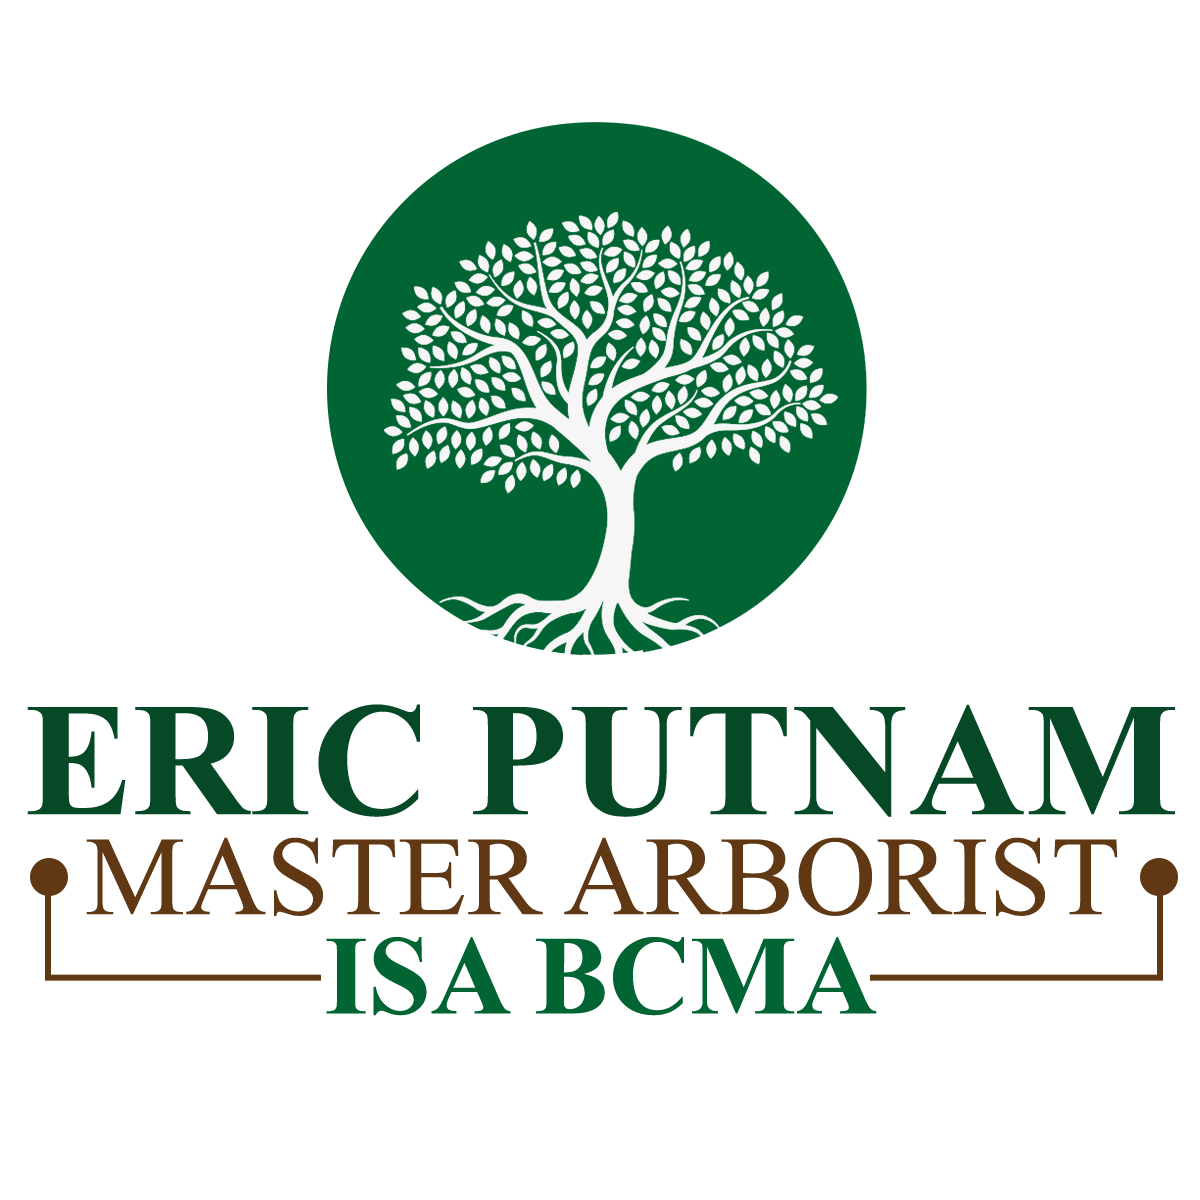 Eric Putnam, BCMA